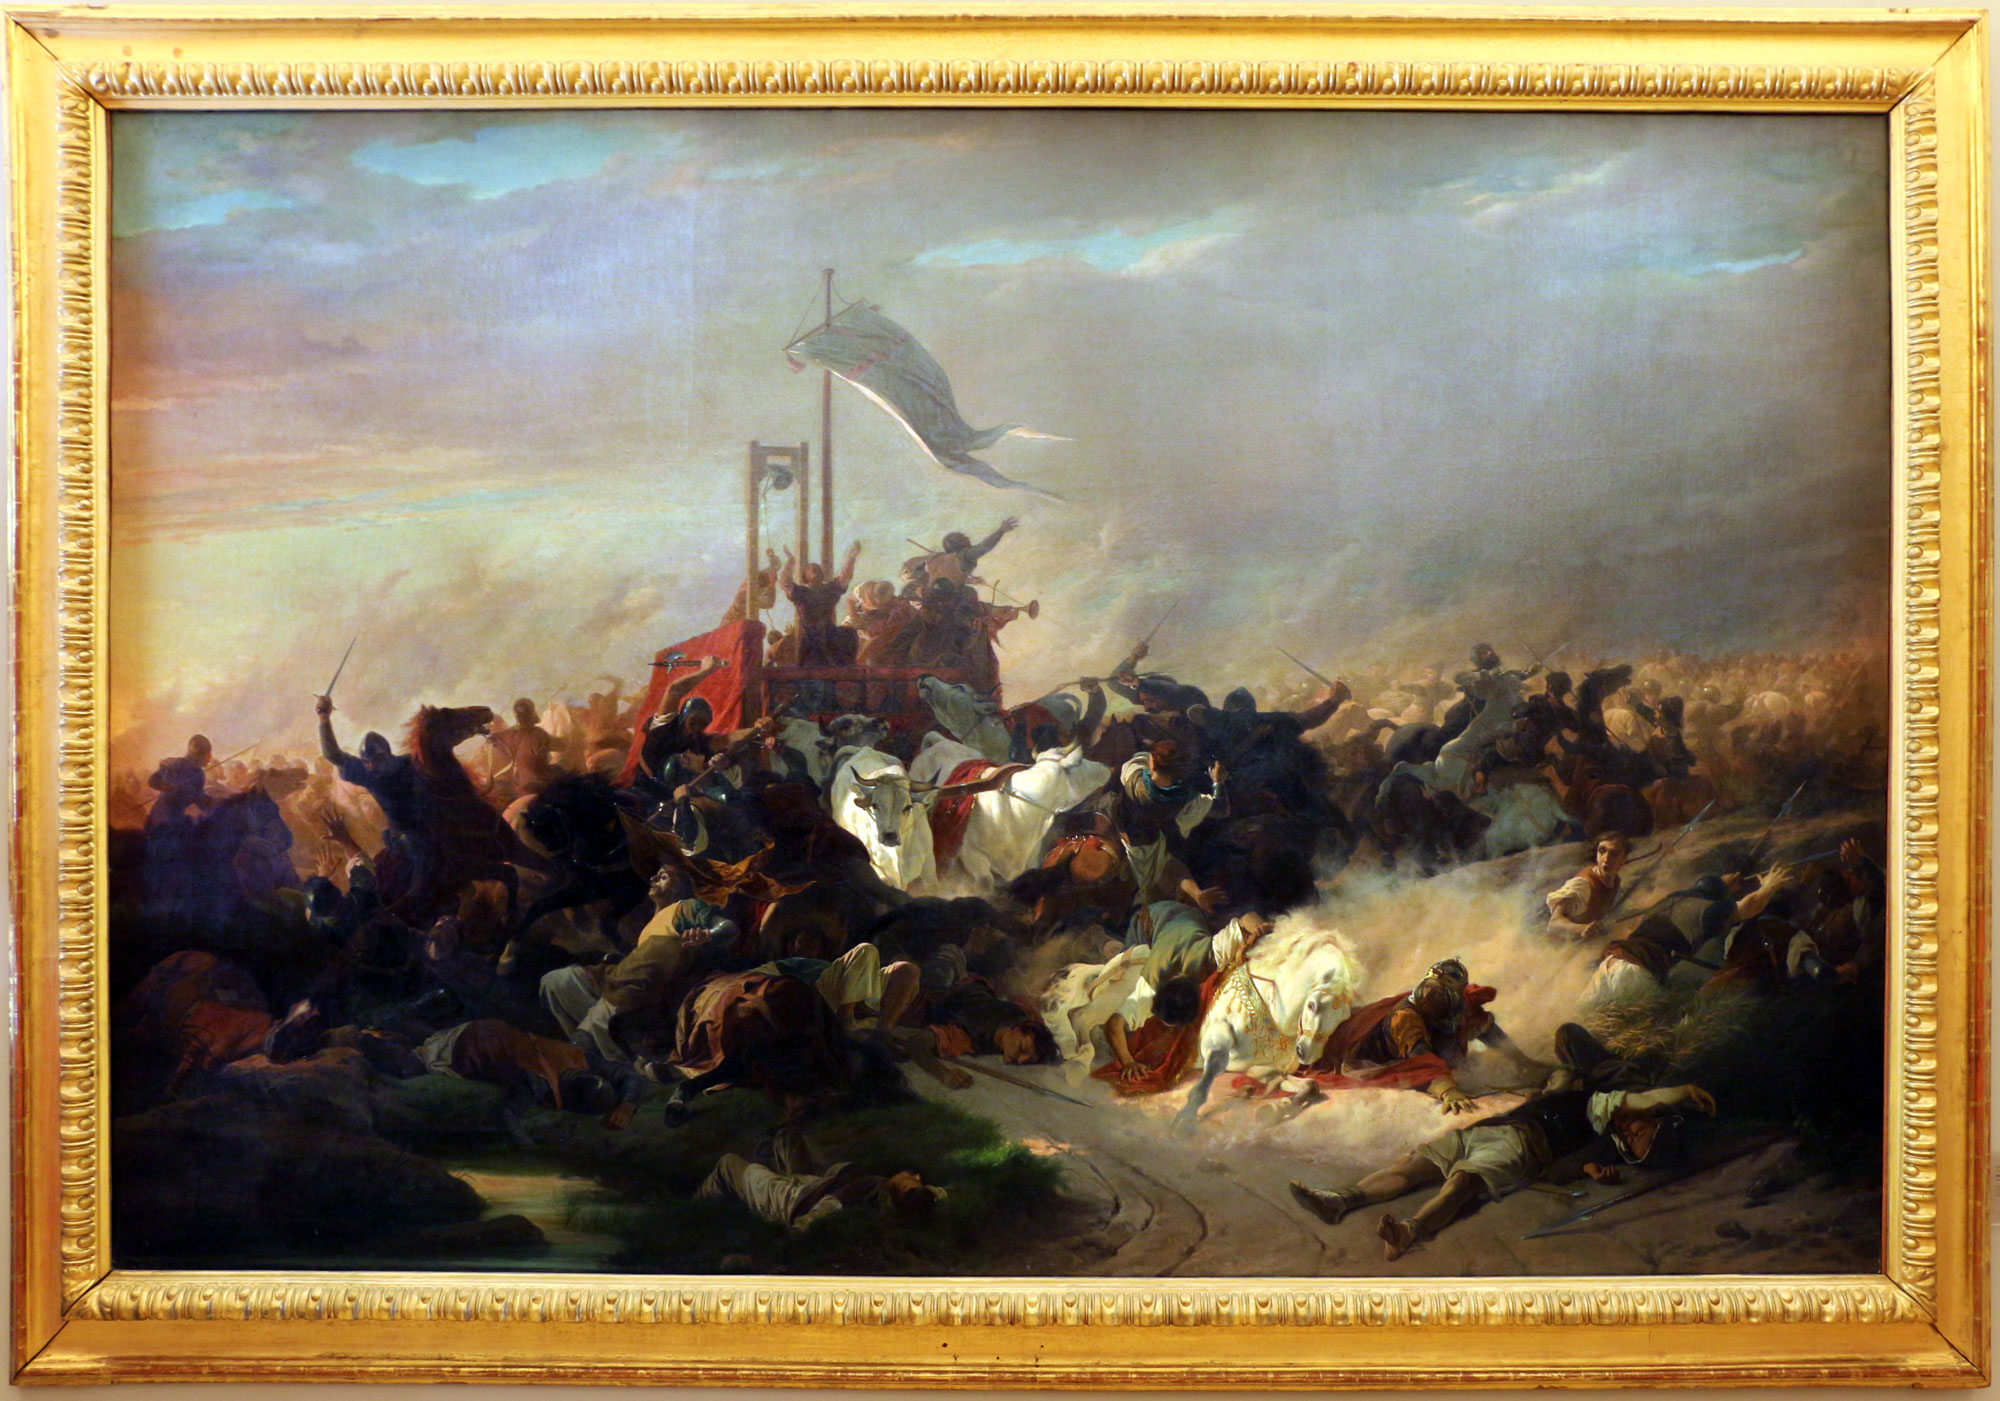 Enrico Pollastrini, The Battle of Legnano (ca. 1860; oil on canvas, 191 x 292 cm; Genoa, Galleria d'Arte Moderna)